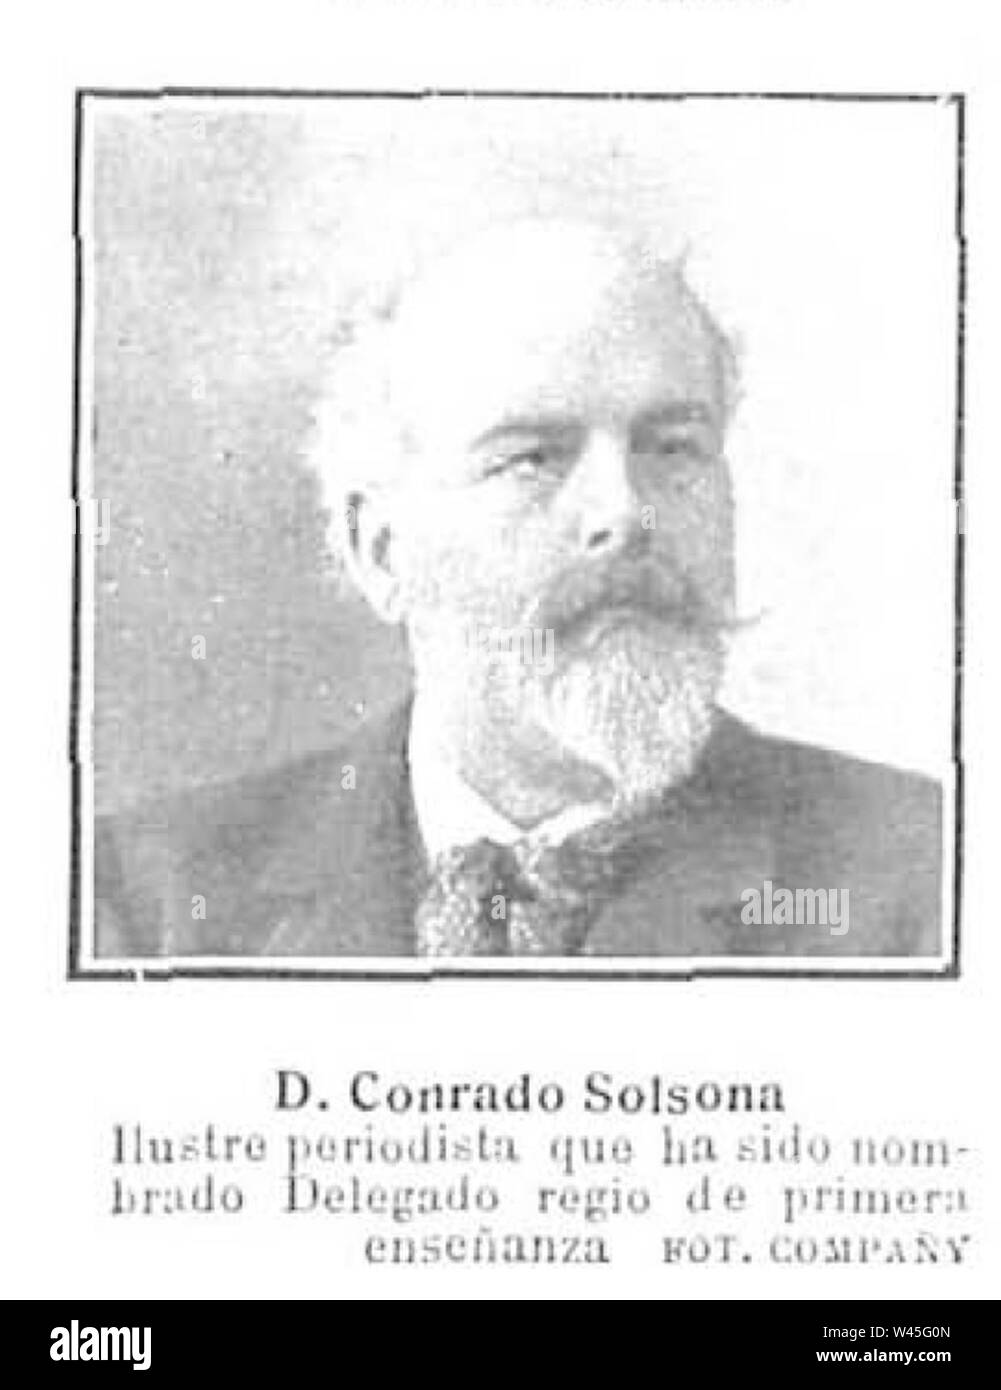 Conrado Solsona, de Compañy, Nuevo Mundo, 25-11, Agra. Stockfoto